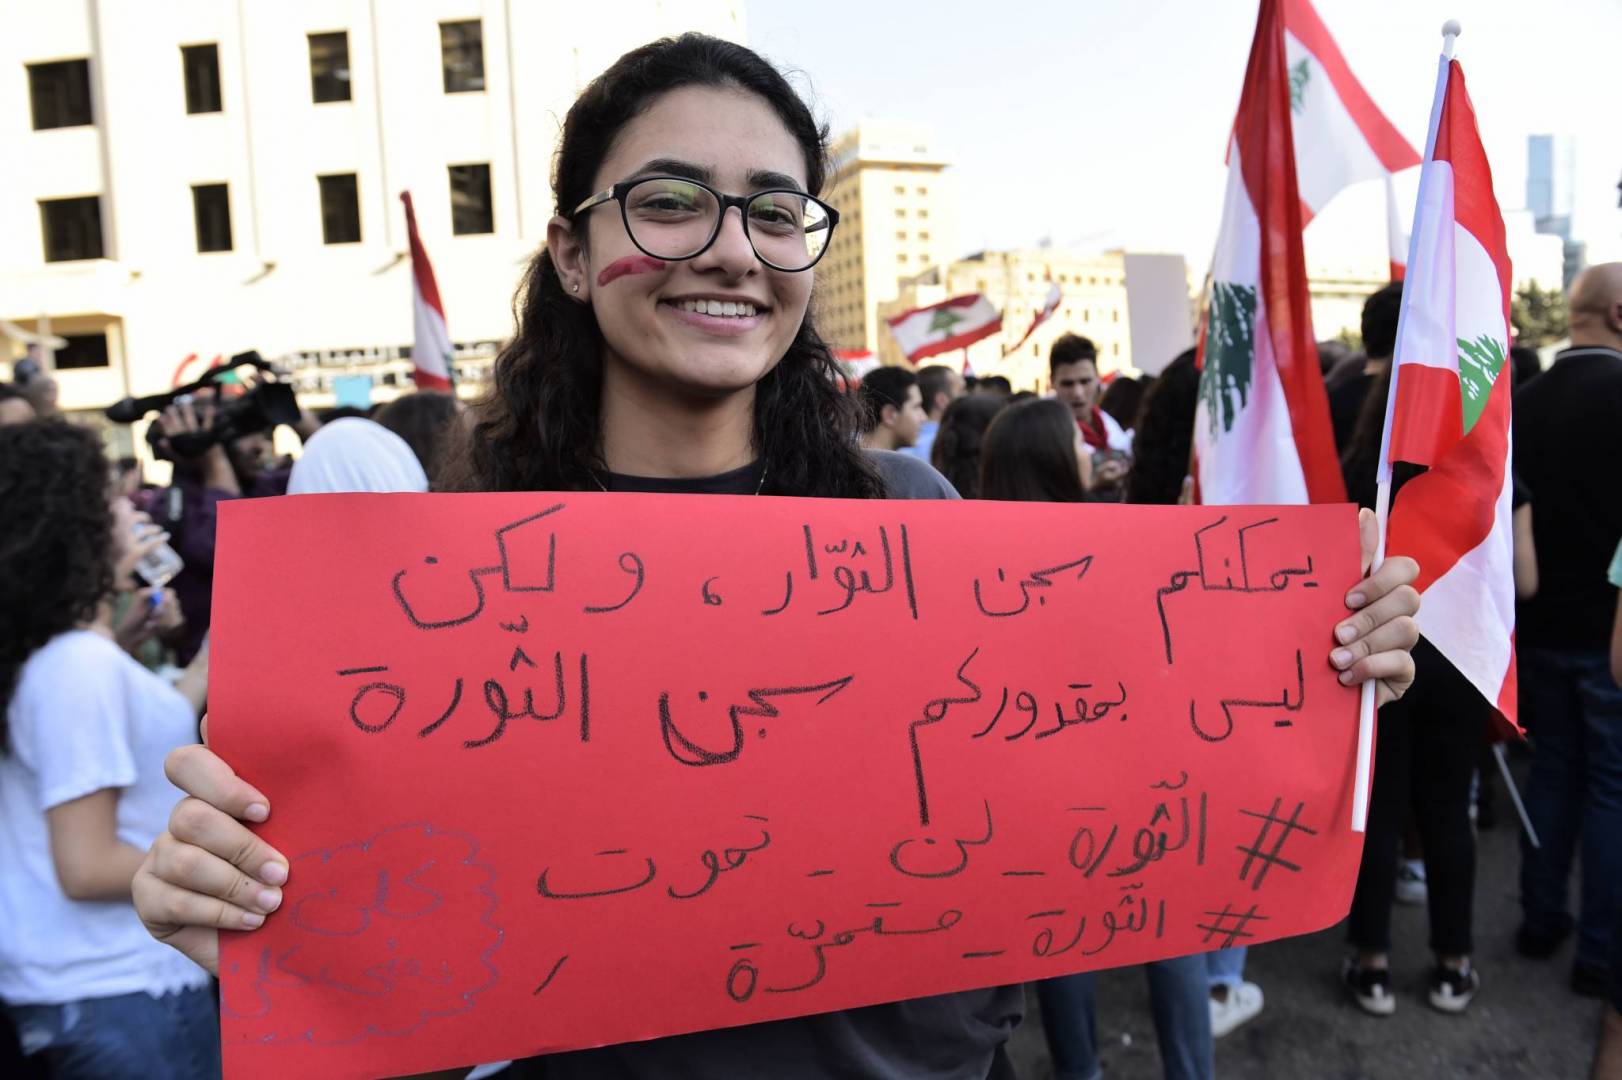 خلال تظاهرة طالبية في ساحة رياض الصلح في بيروت (أحمد عزاقير)